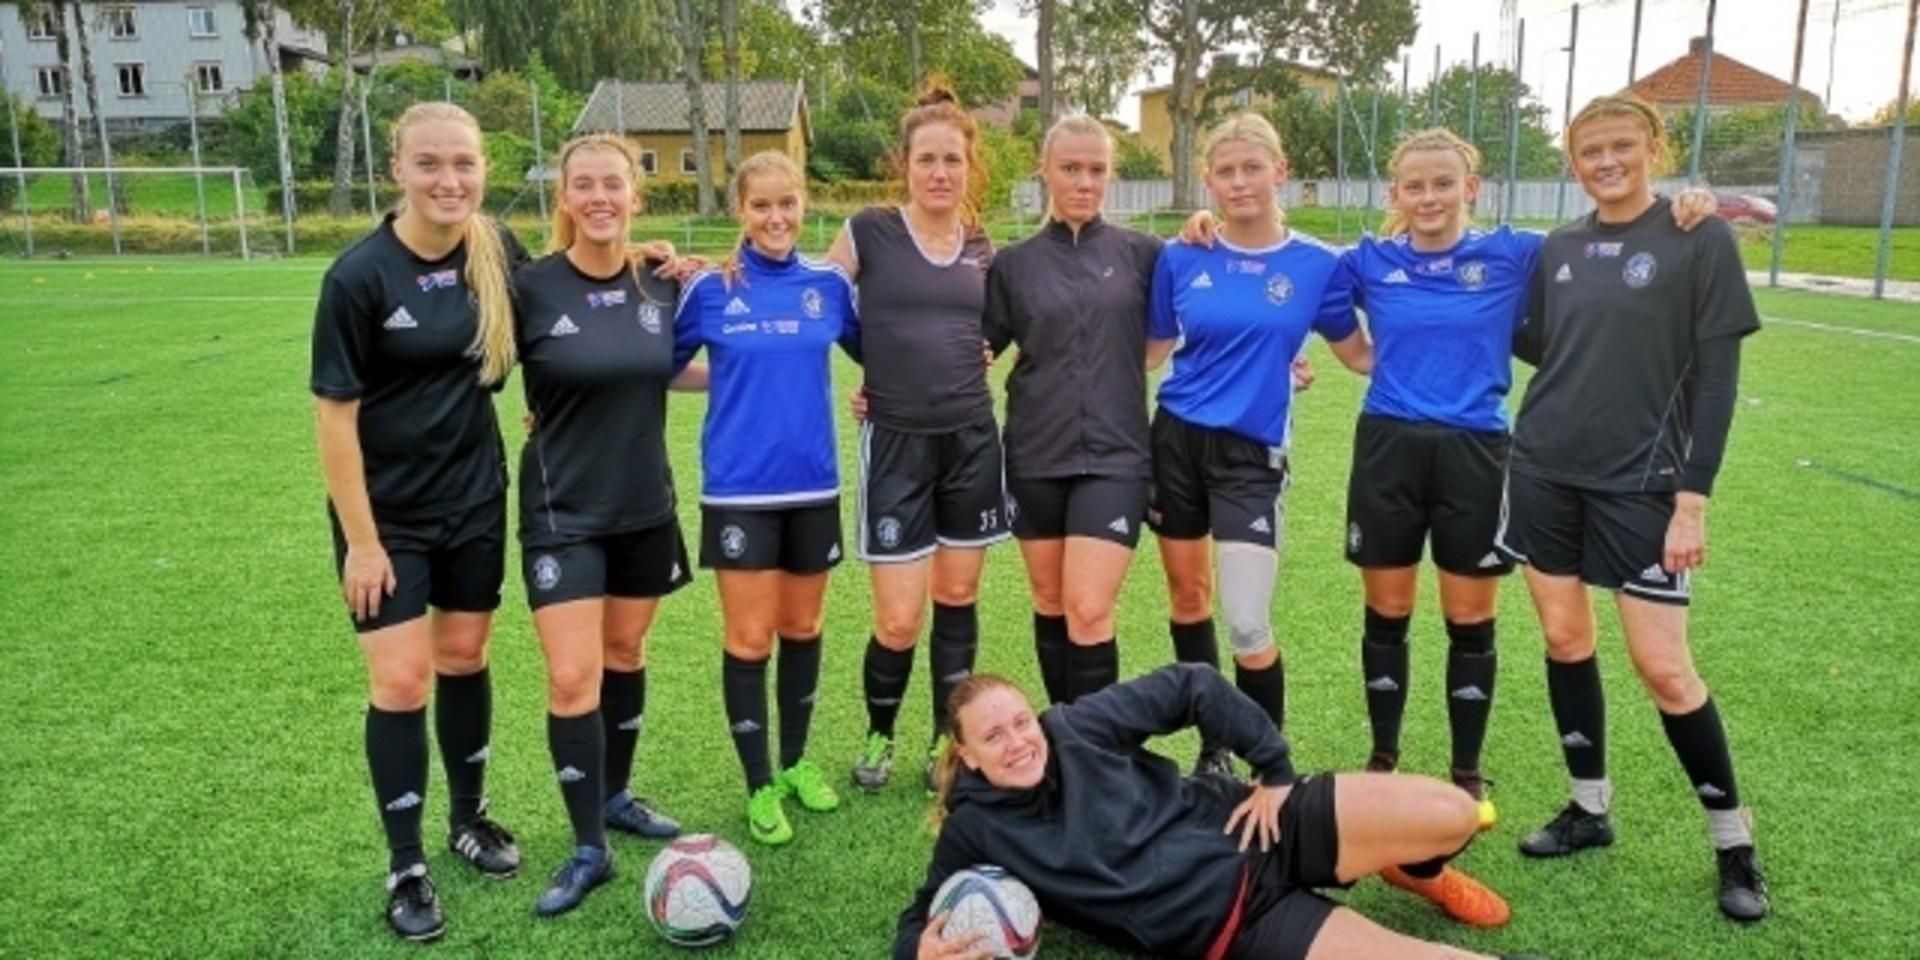 Några av spelarna i Älvsborgs talangfulla lag. Från vänster; Annie Hjälmeby, Jeanna de Maré, Caroline Jarl, Elin Liljeblad, Sara Wernstål, Amanda Fhager, Sara Hörvallius, Kajsa Blom och liggande Jennifer Westergren.